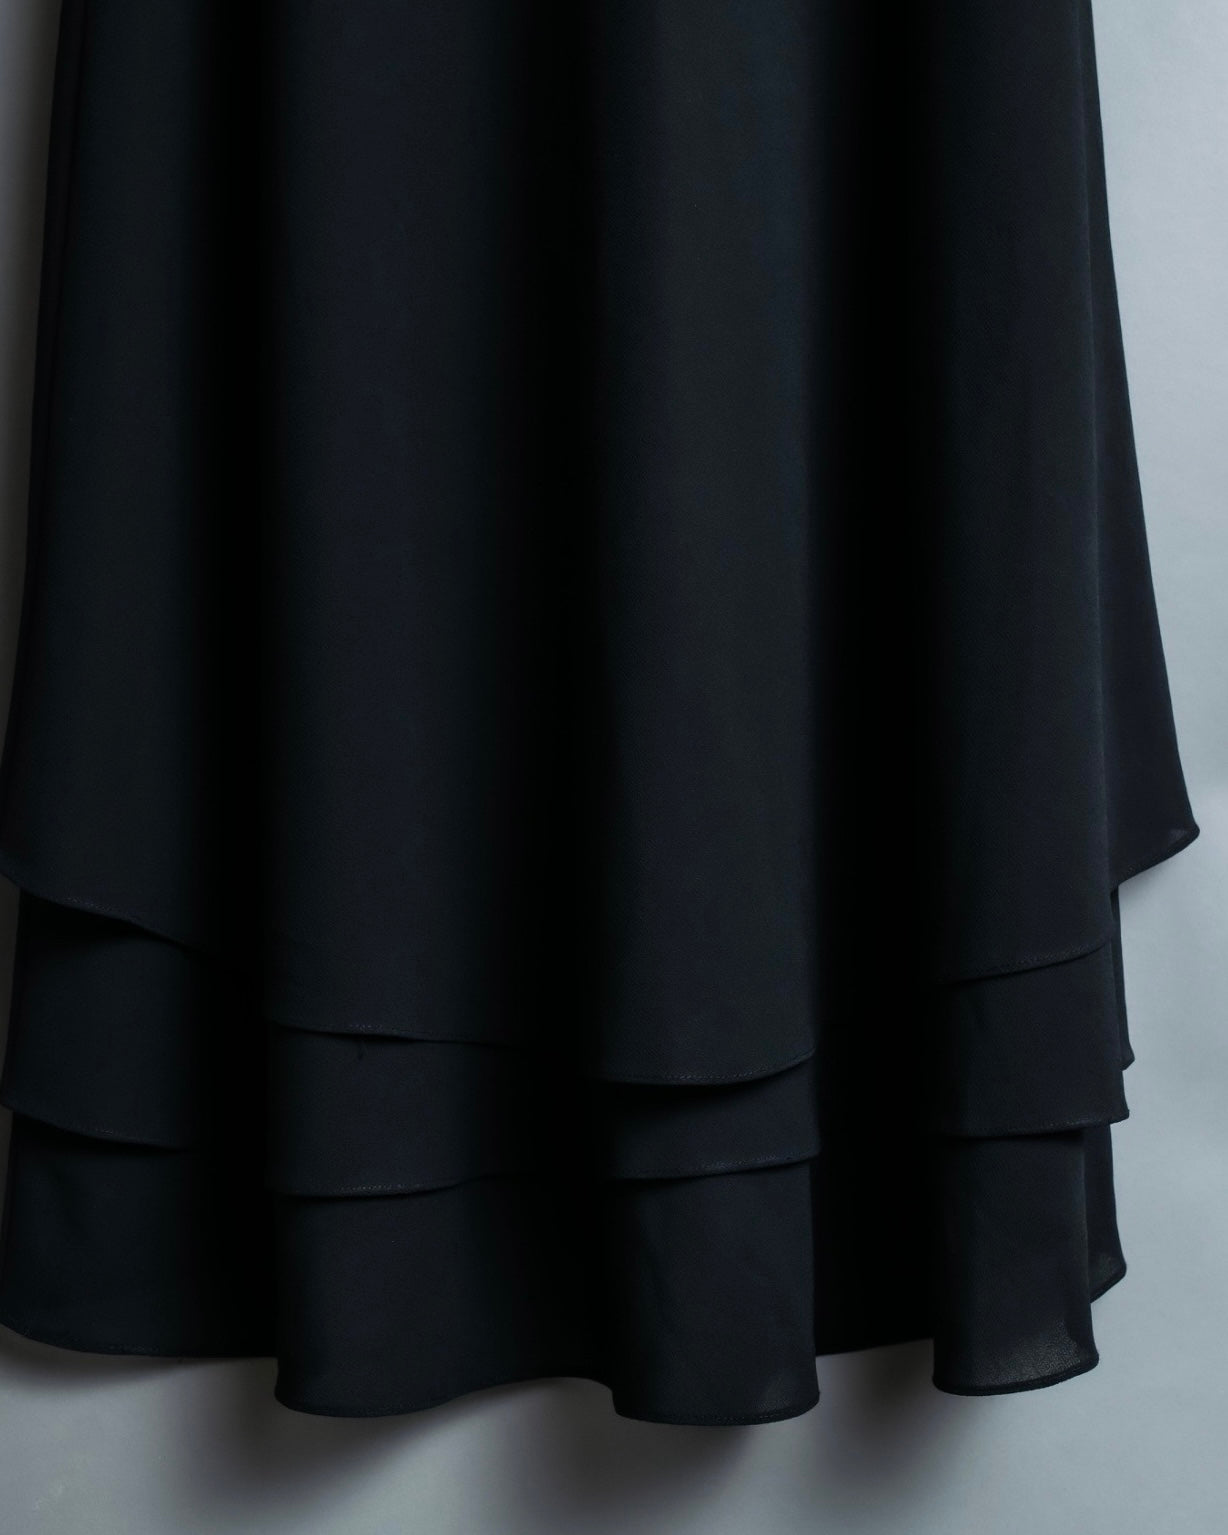 black layered skirt